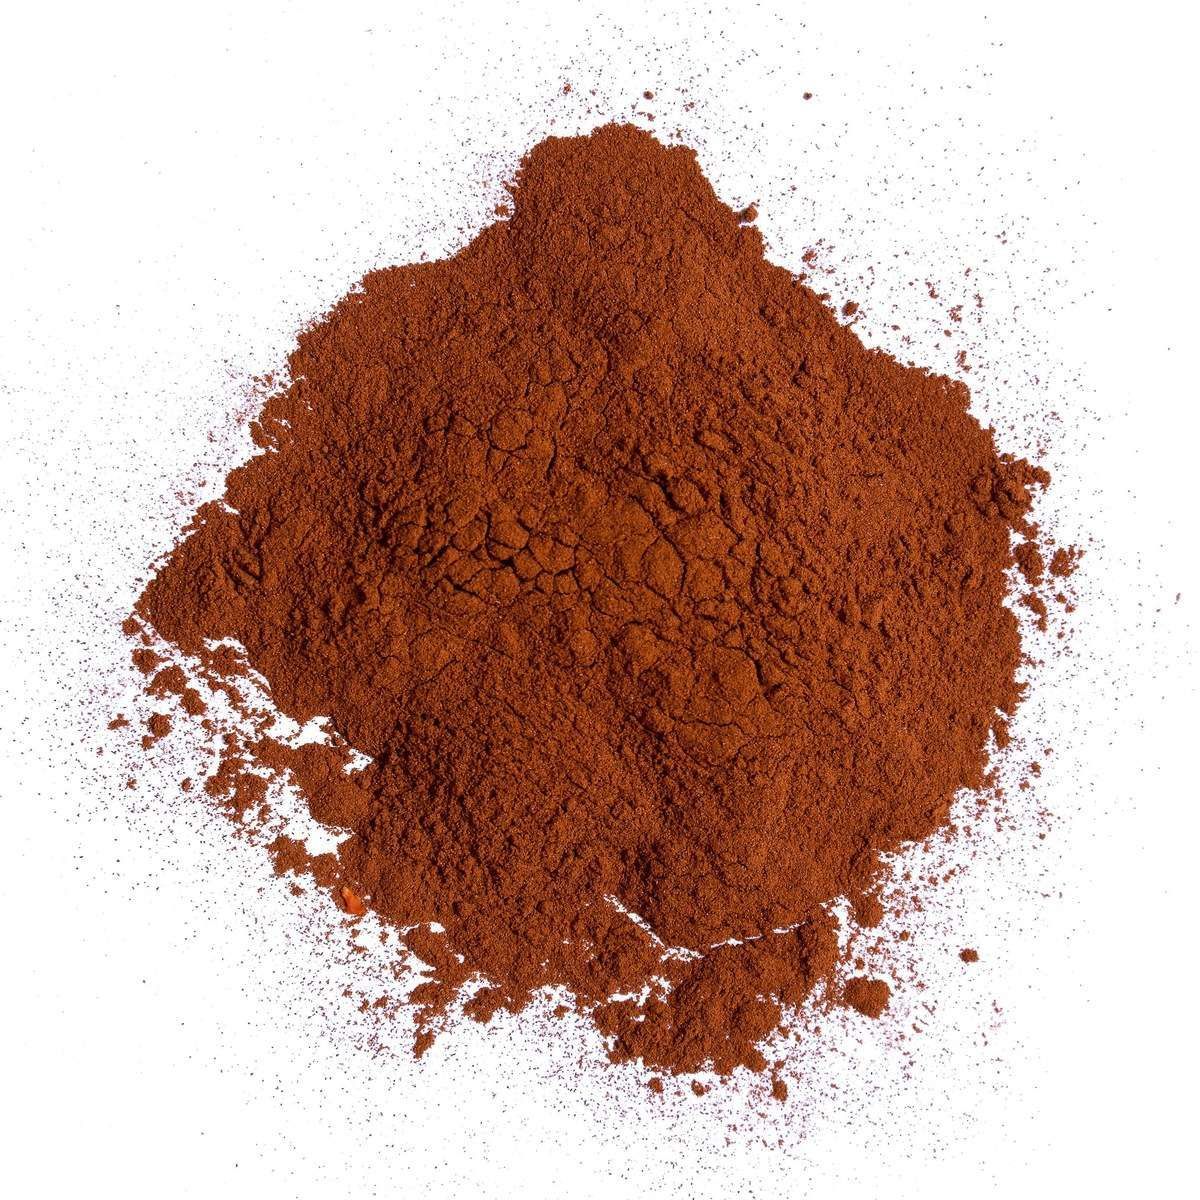 Organic Alkalized Cocoa Powder 20-22% Fat Content